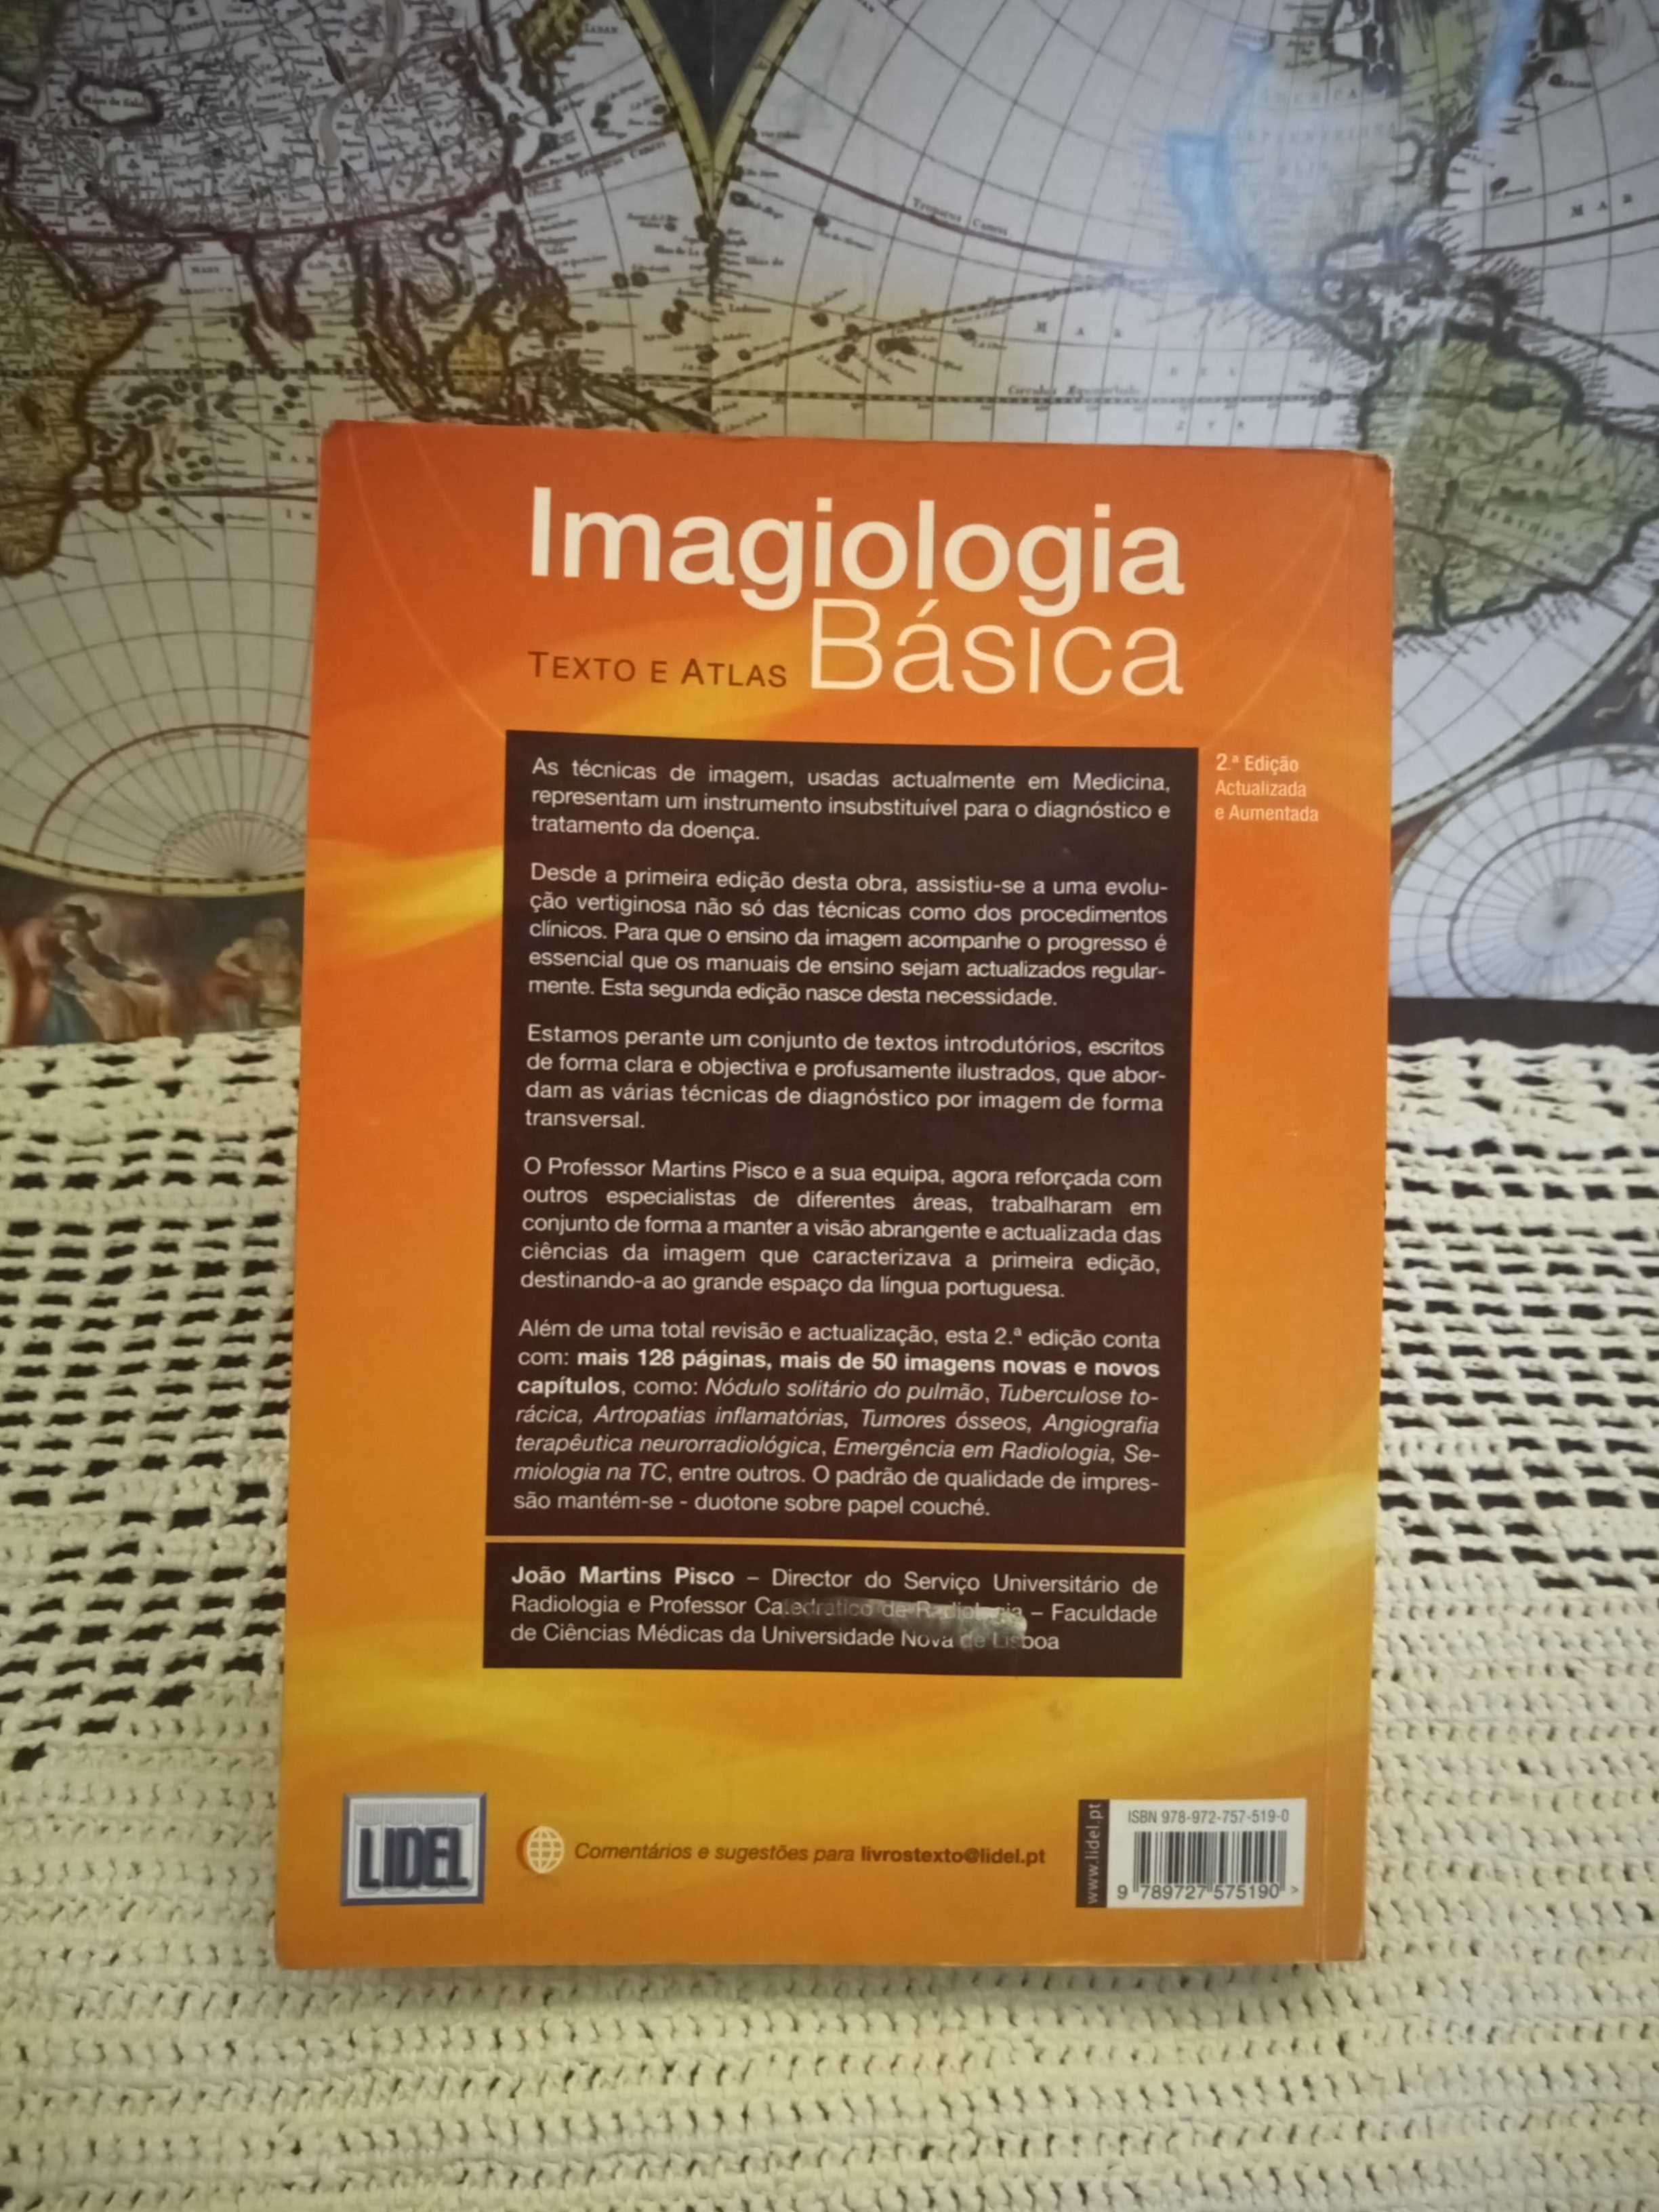 Imagiologia Básica - João Martins Pisco